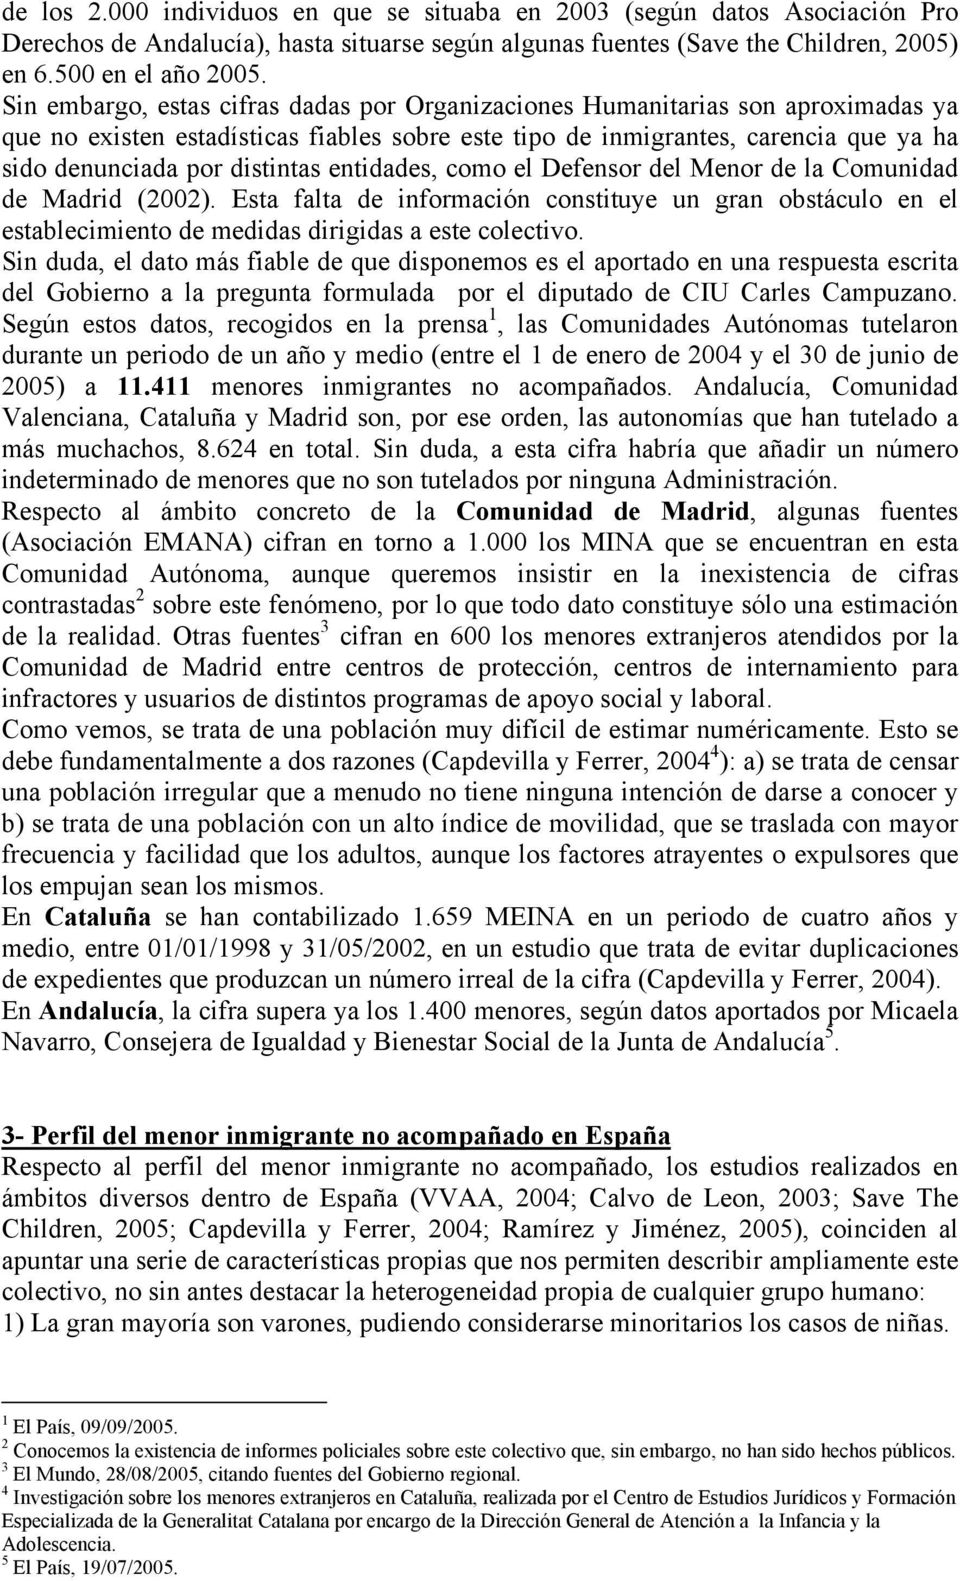 entidades, como el Defensor del Menor de la Comunidad de Madrid (2002). Esta falta de información constituye un gran obstáculo en el establecimiento de medidas dirigidas a este colectivo.